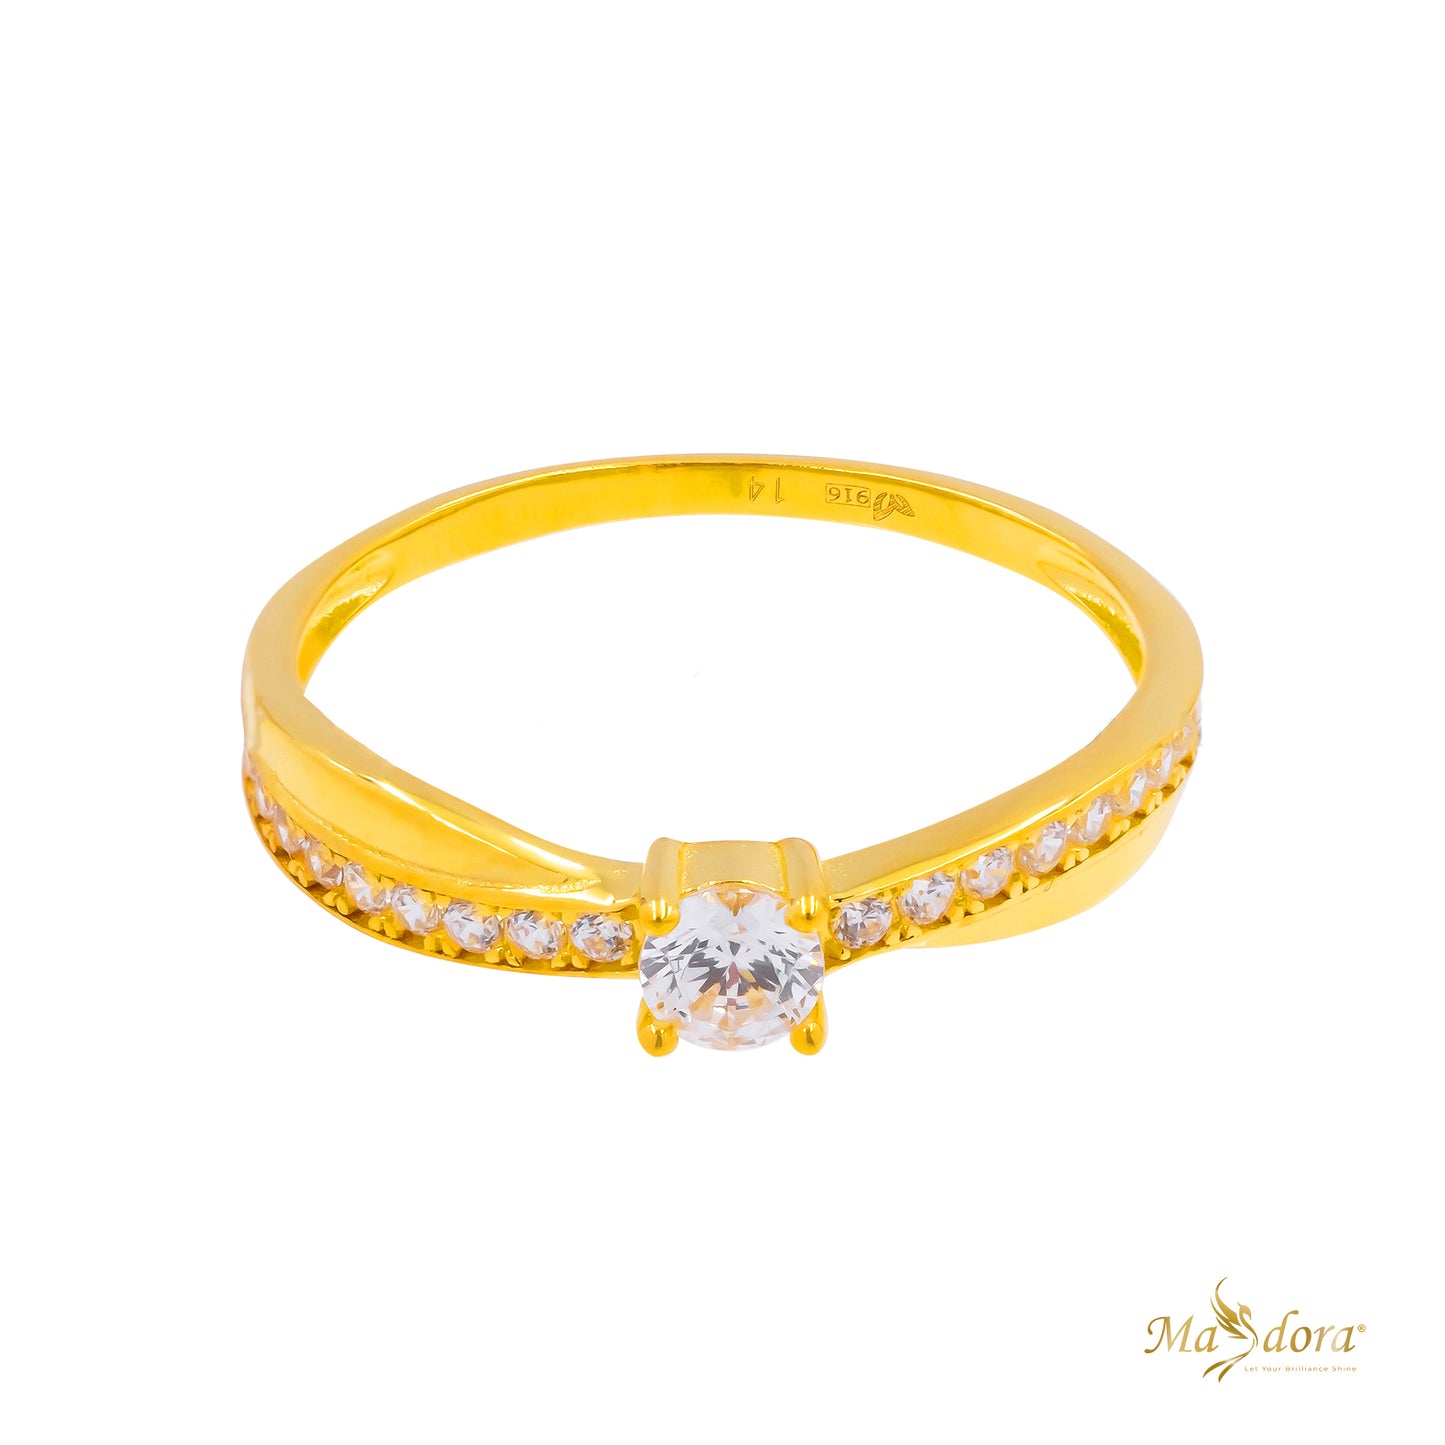 Masdora Sparkling Solitaire Ring Emas 916